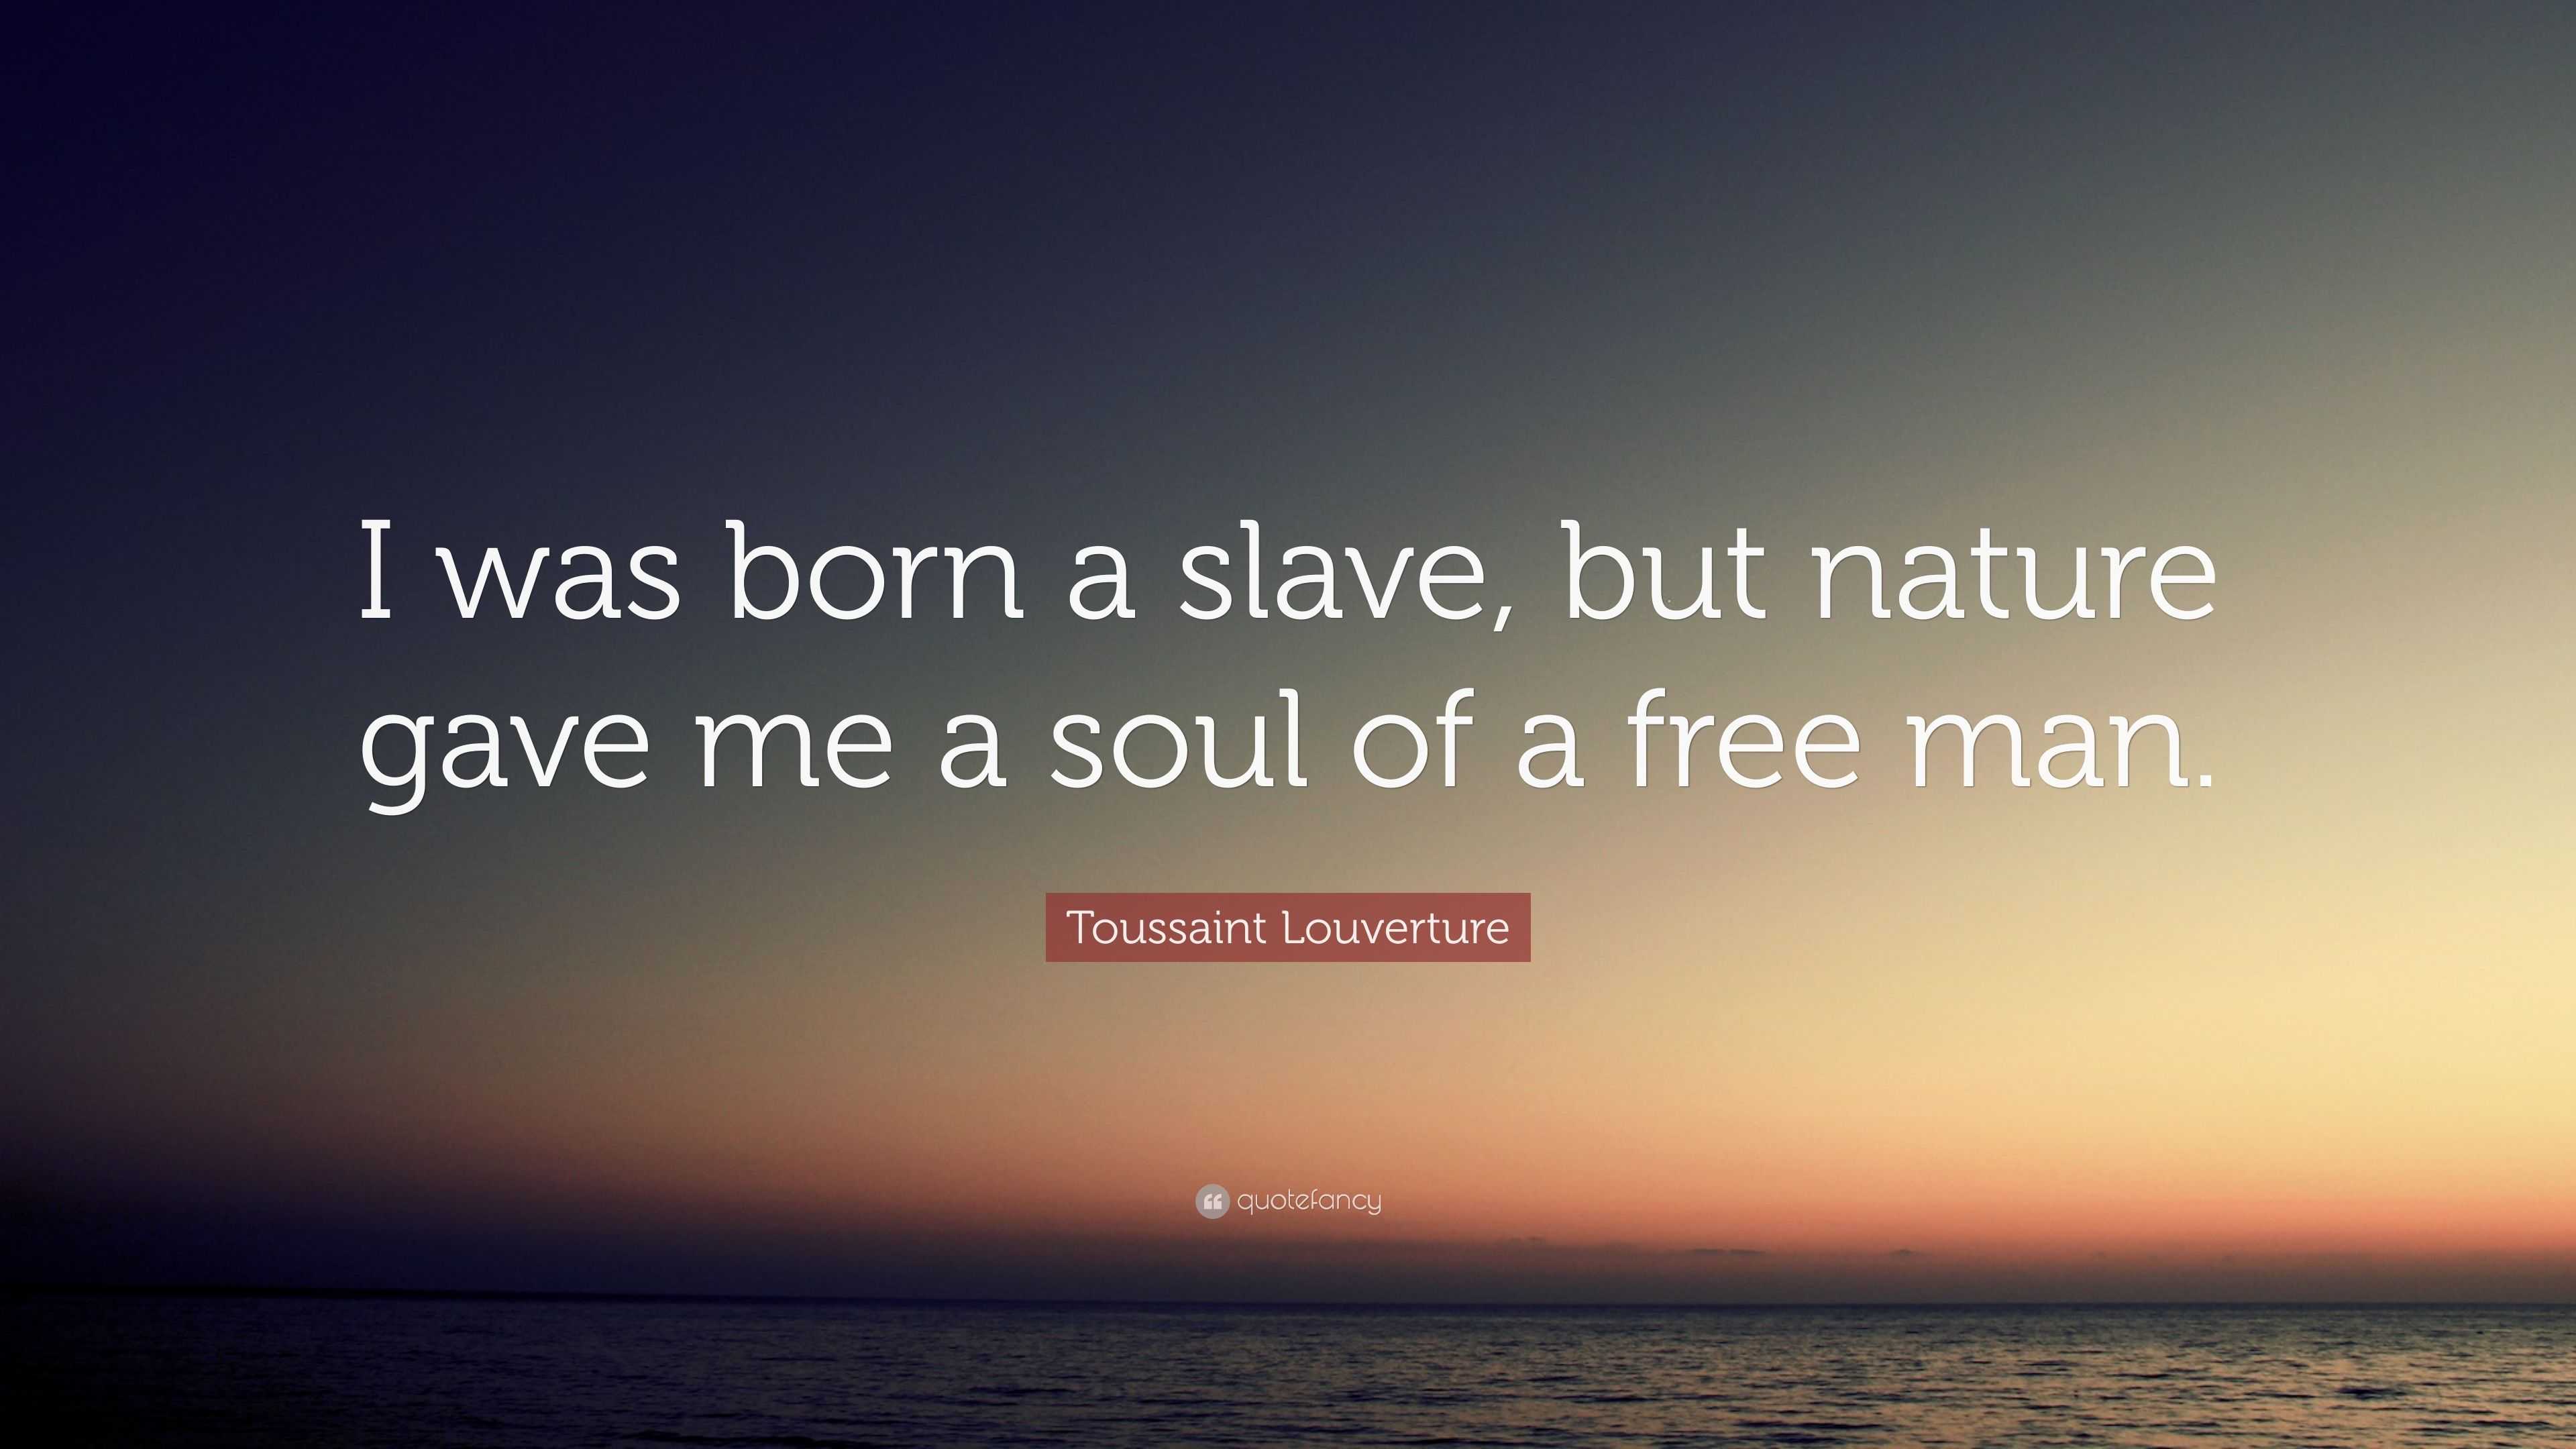 Toussaint Louverture Quote: “I was born a slave, but nature gave me a ...